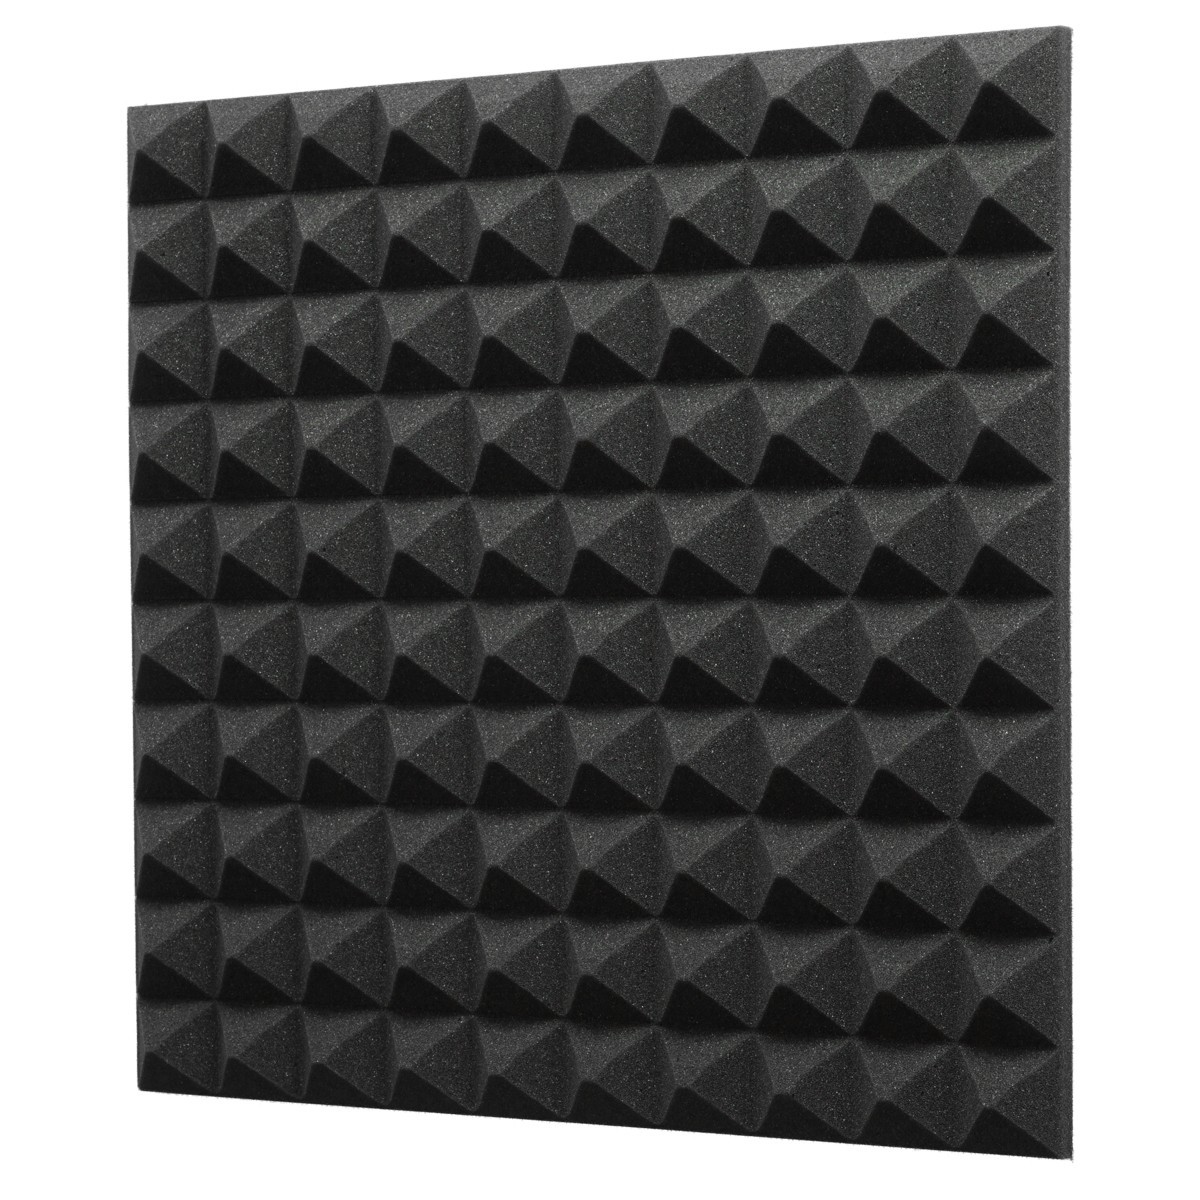 Акустический поролон EchoFom Пирамида 40 мм 50x50 см Черный графит .